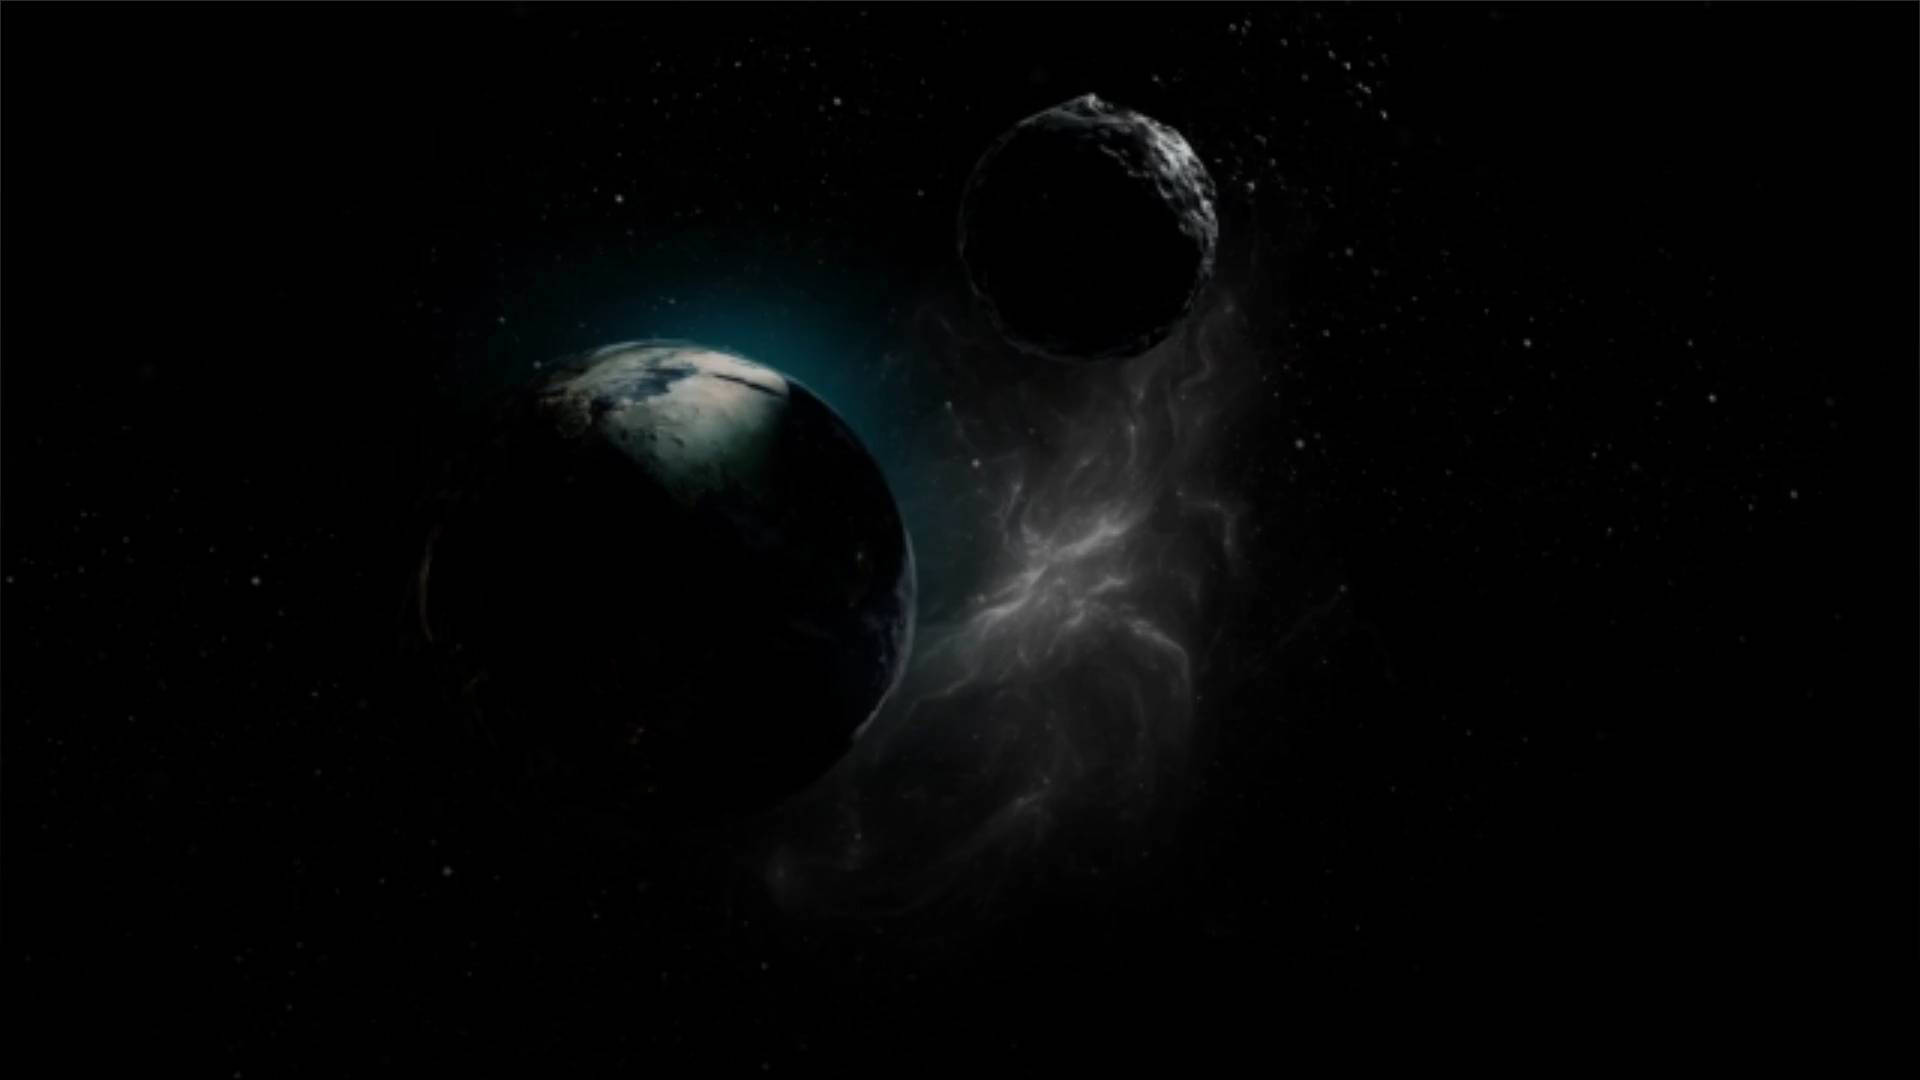 Les astronomes observent une collision entre deux exoplanètes